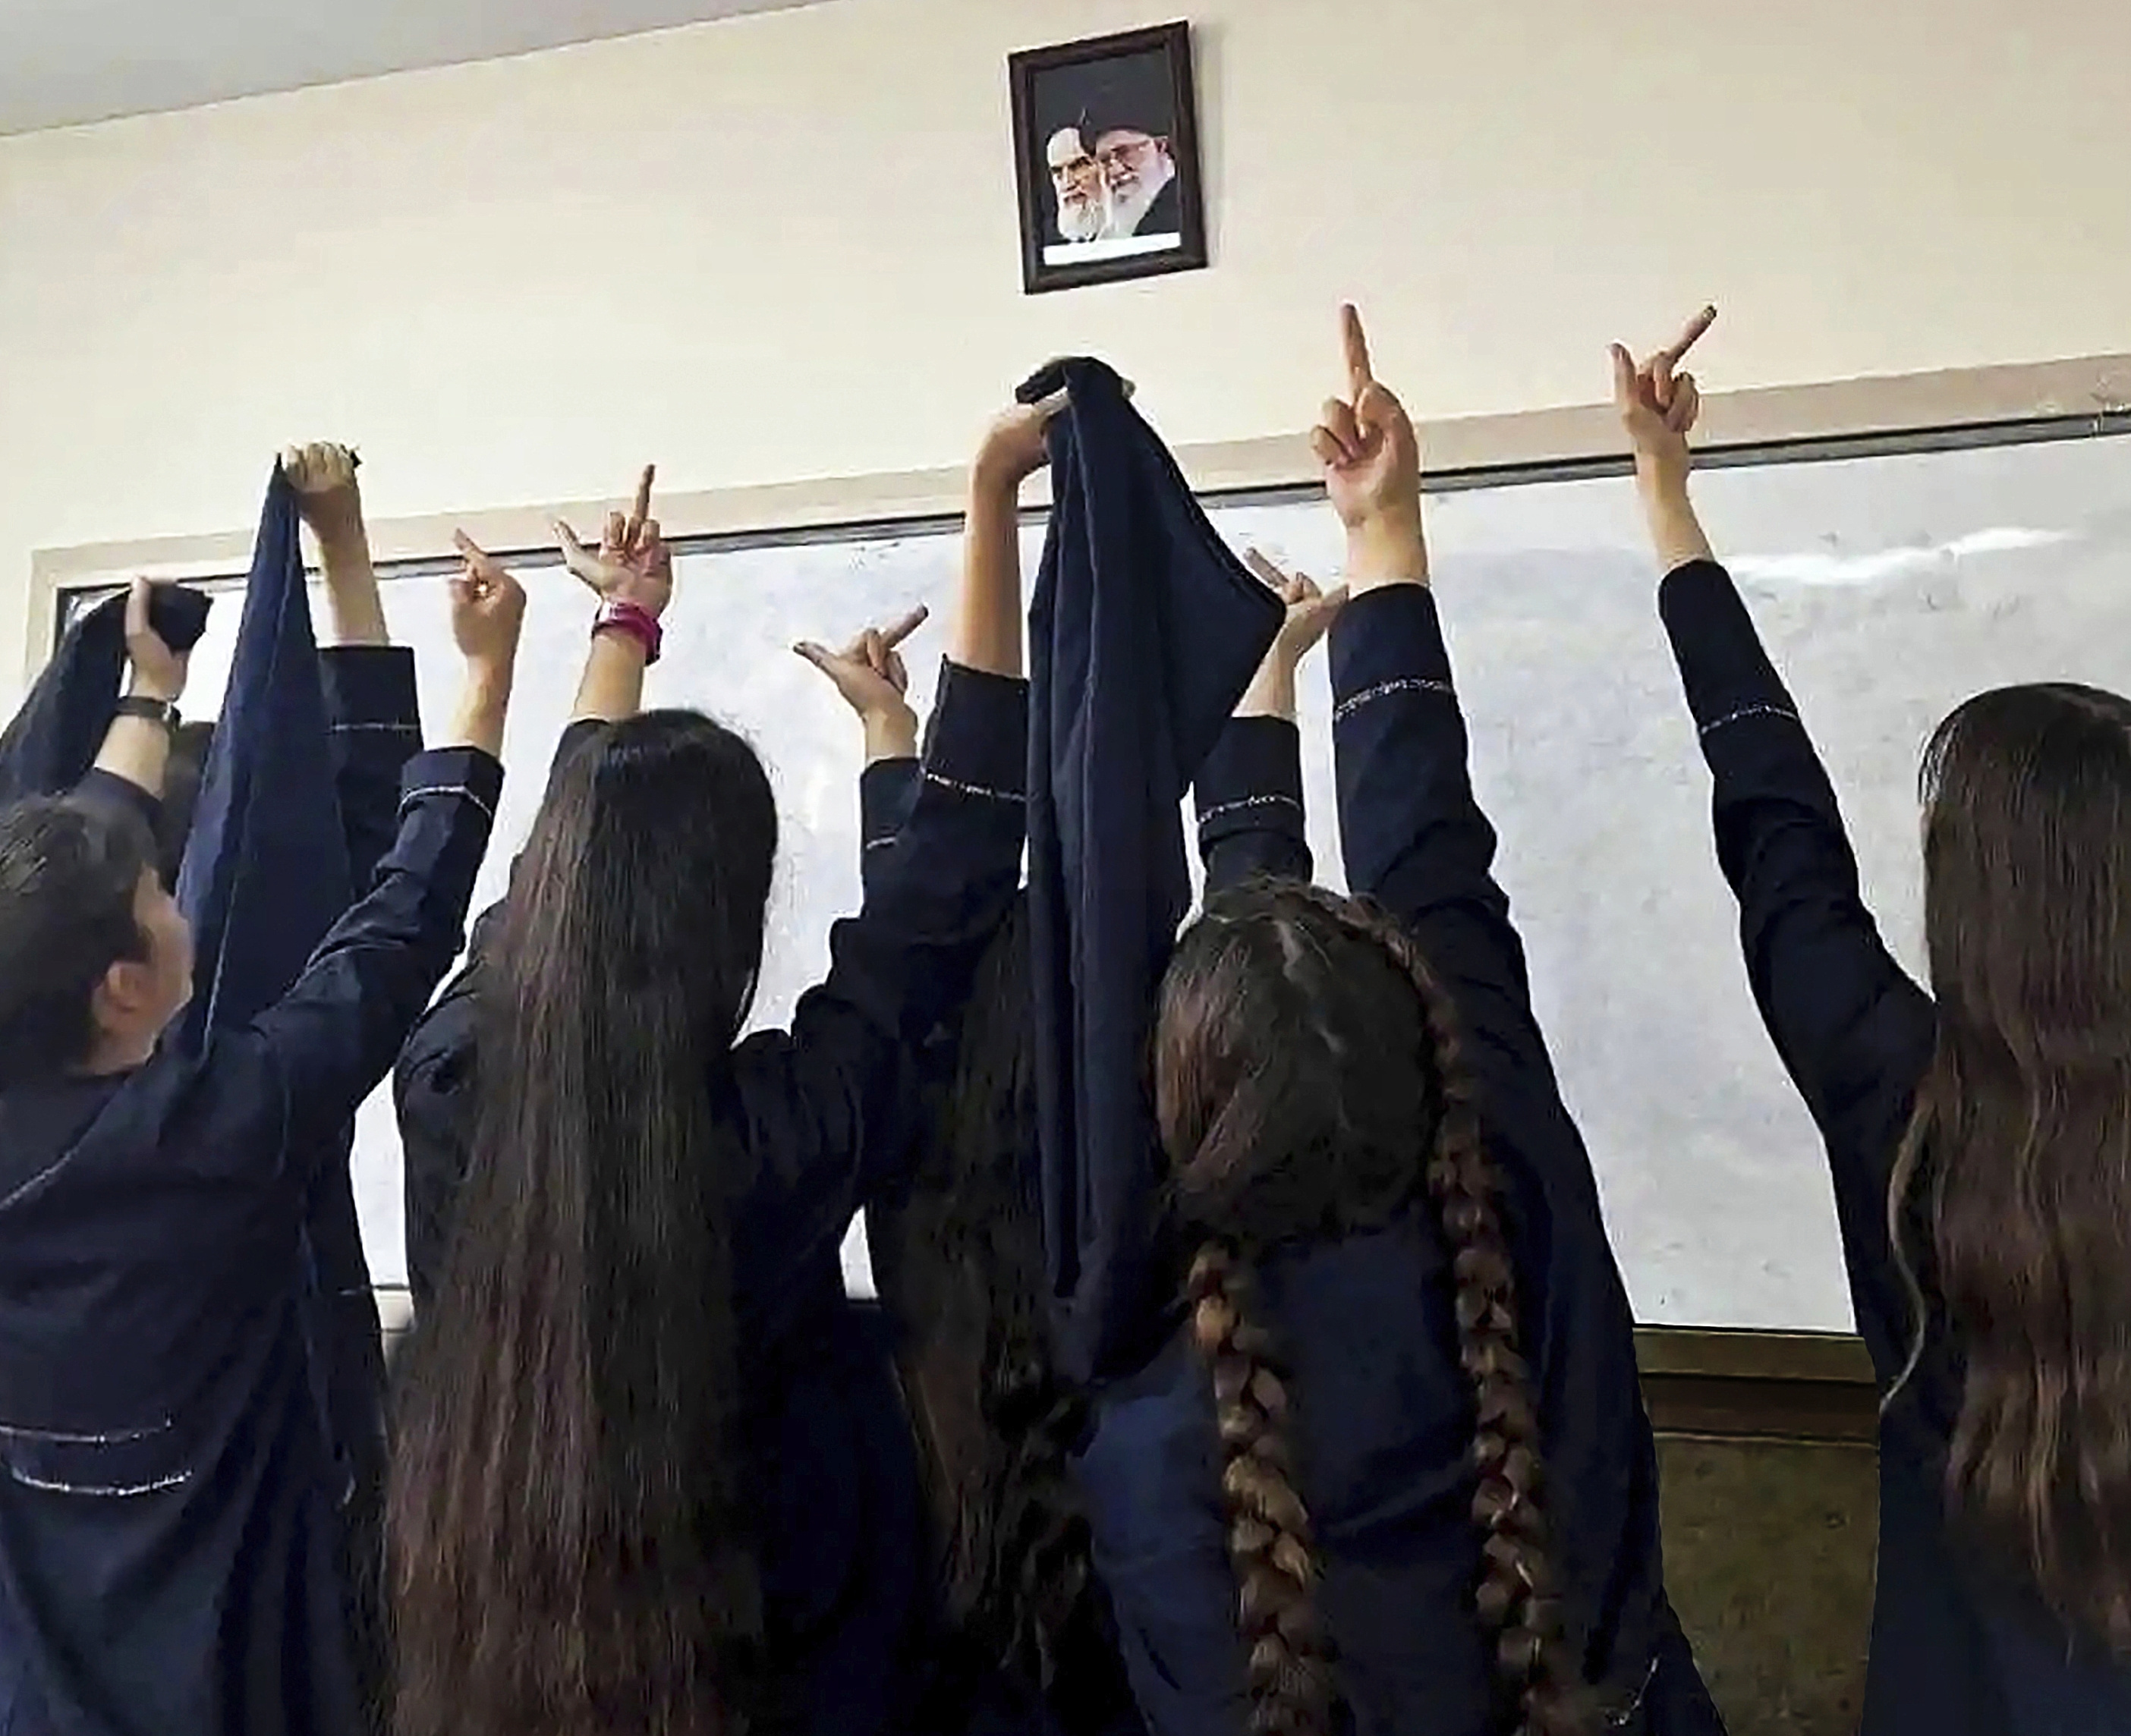 Alumnas de un instituto hacen una peineta a una foto del Ayatol Jomeini y del actual lder supremo, Ali Jamenei.